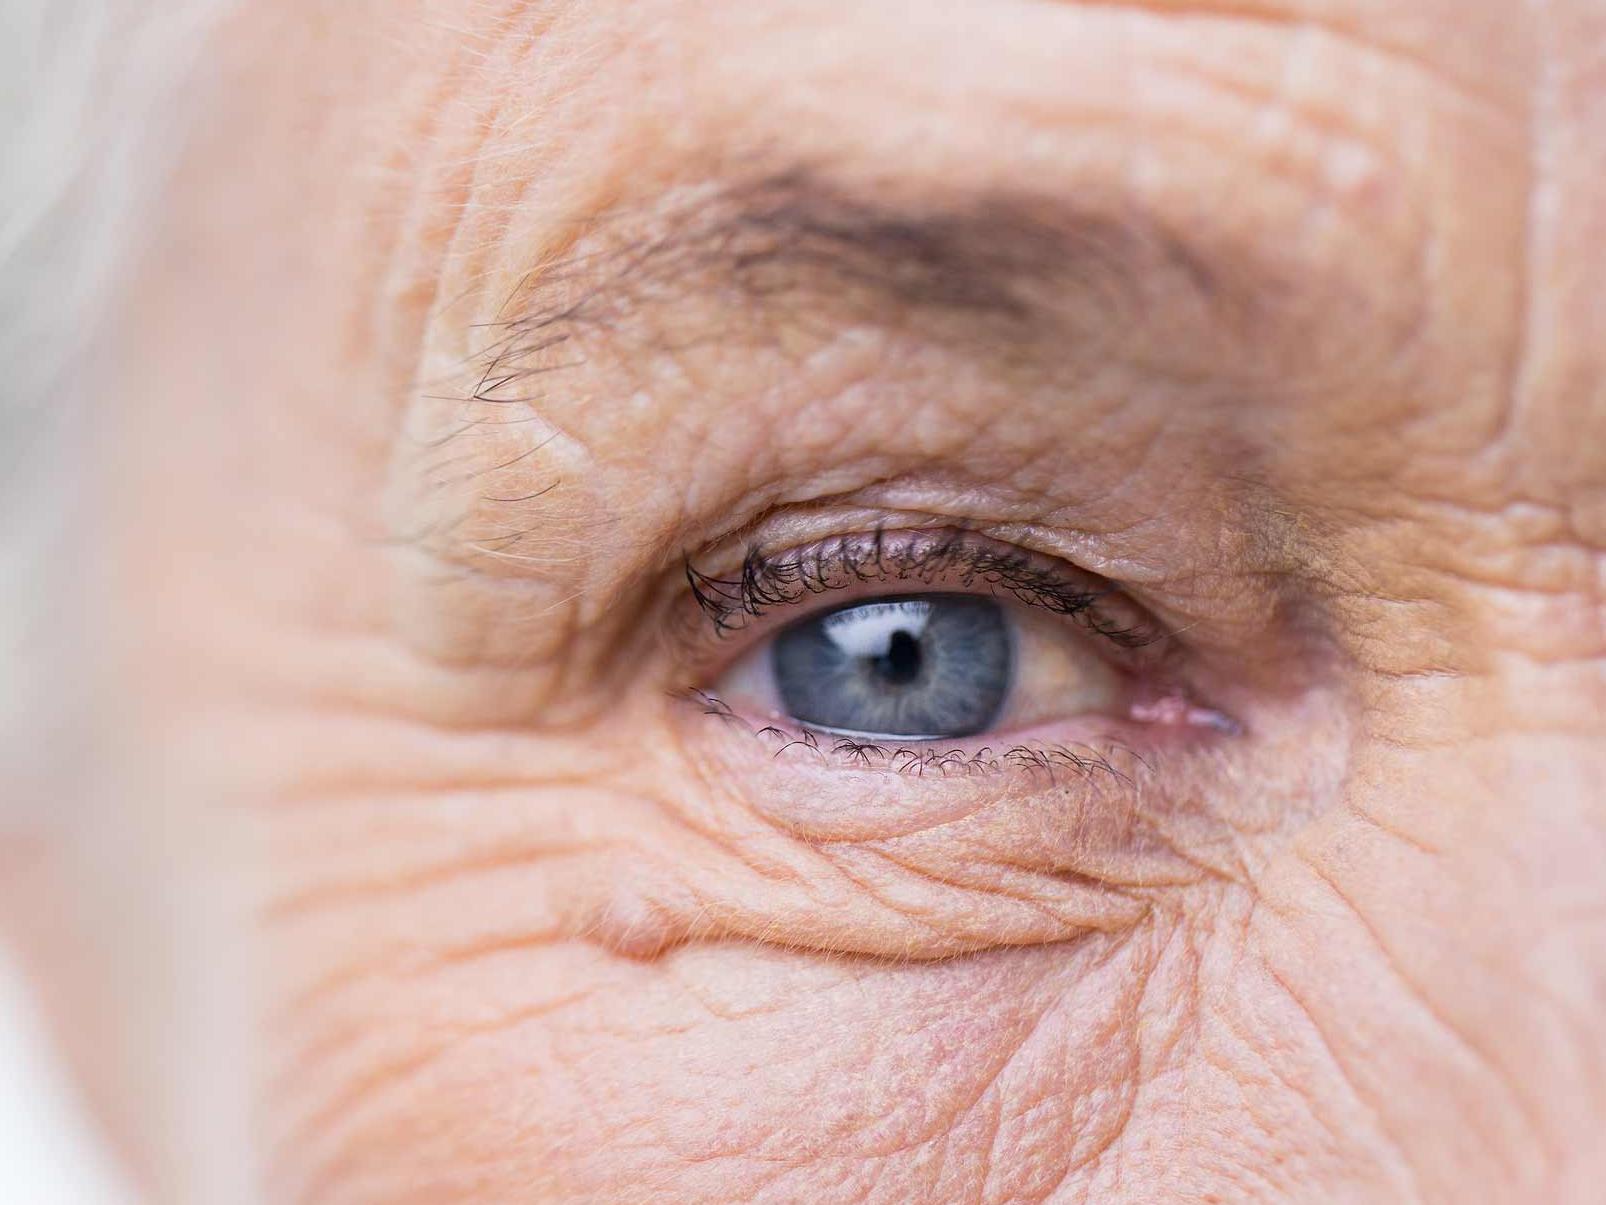 A kép egy károsodott szem közeli képét mutatja, illusztrálva a szemkörnyék egészségét fenyegető potenciális veszélyeket. 